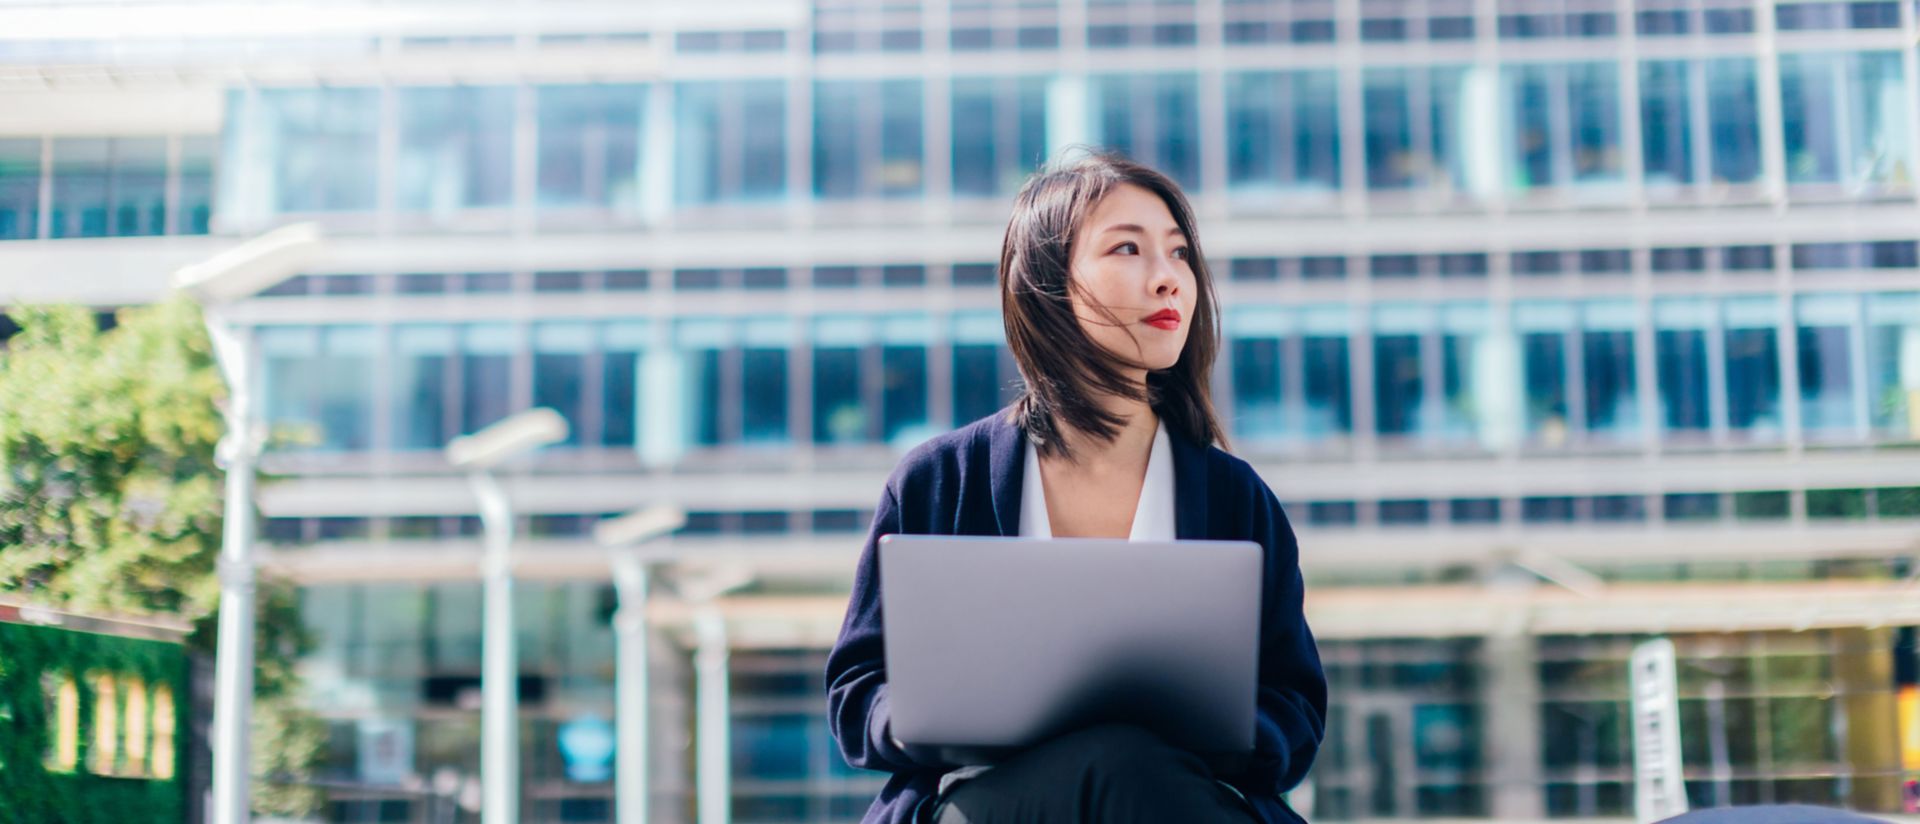 Bild einer Frau, die vor einem Gebäude sitzt und am Laptop arbeitet